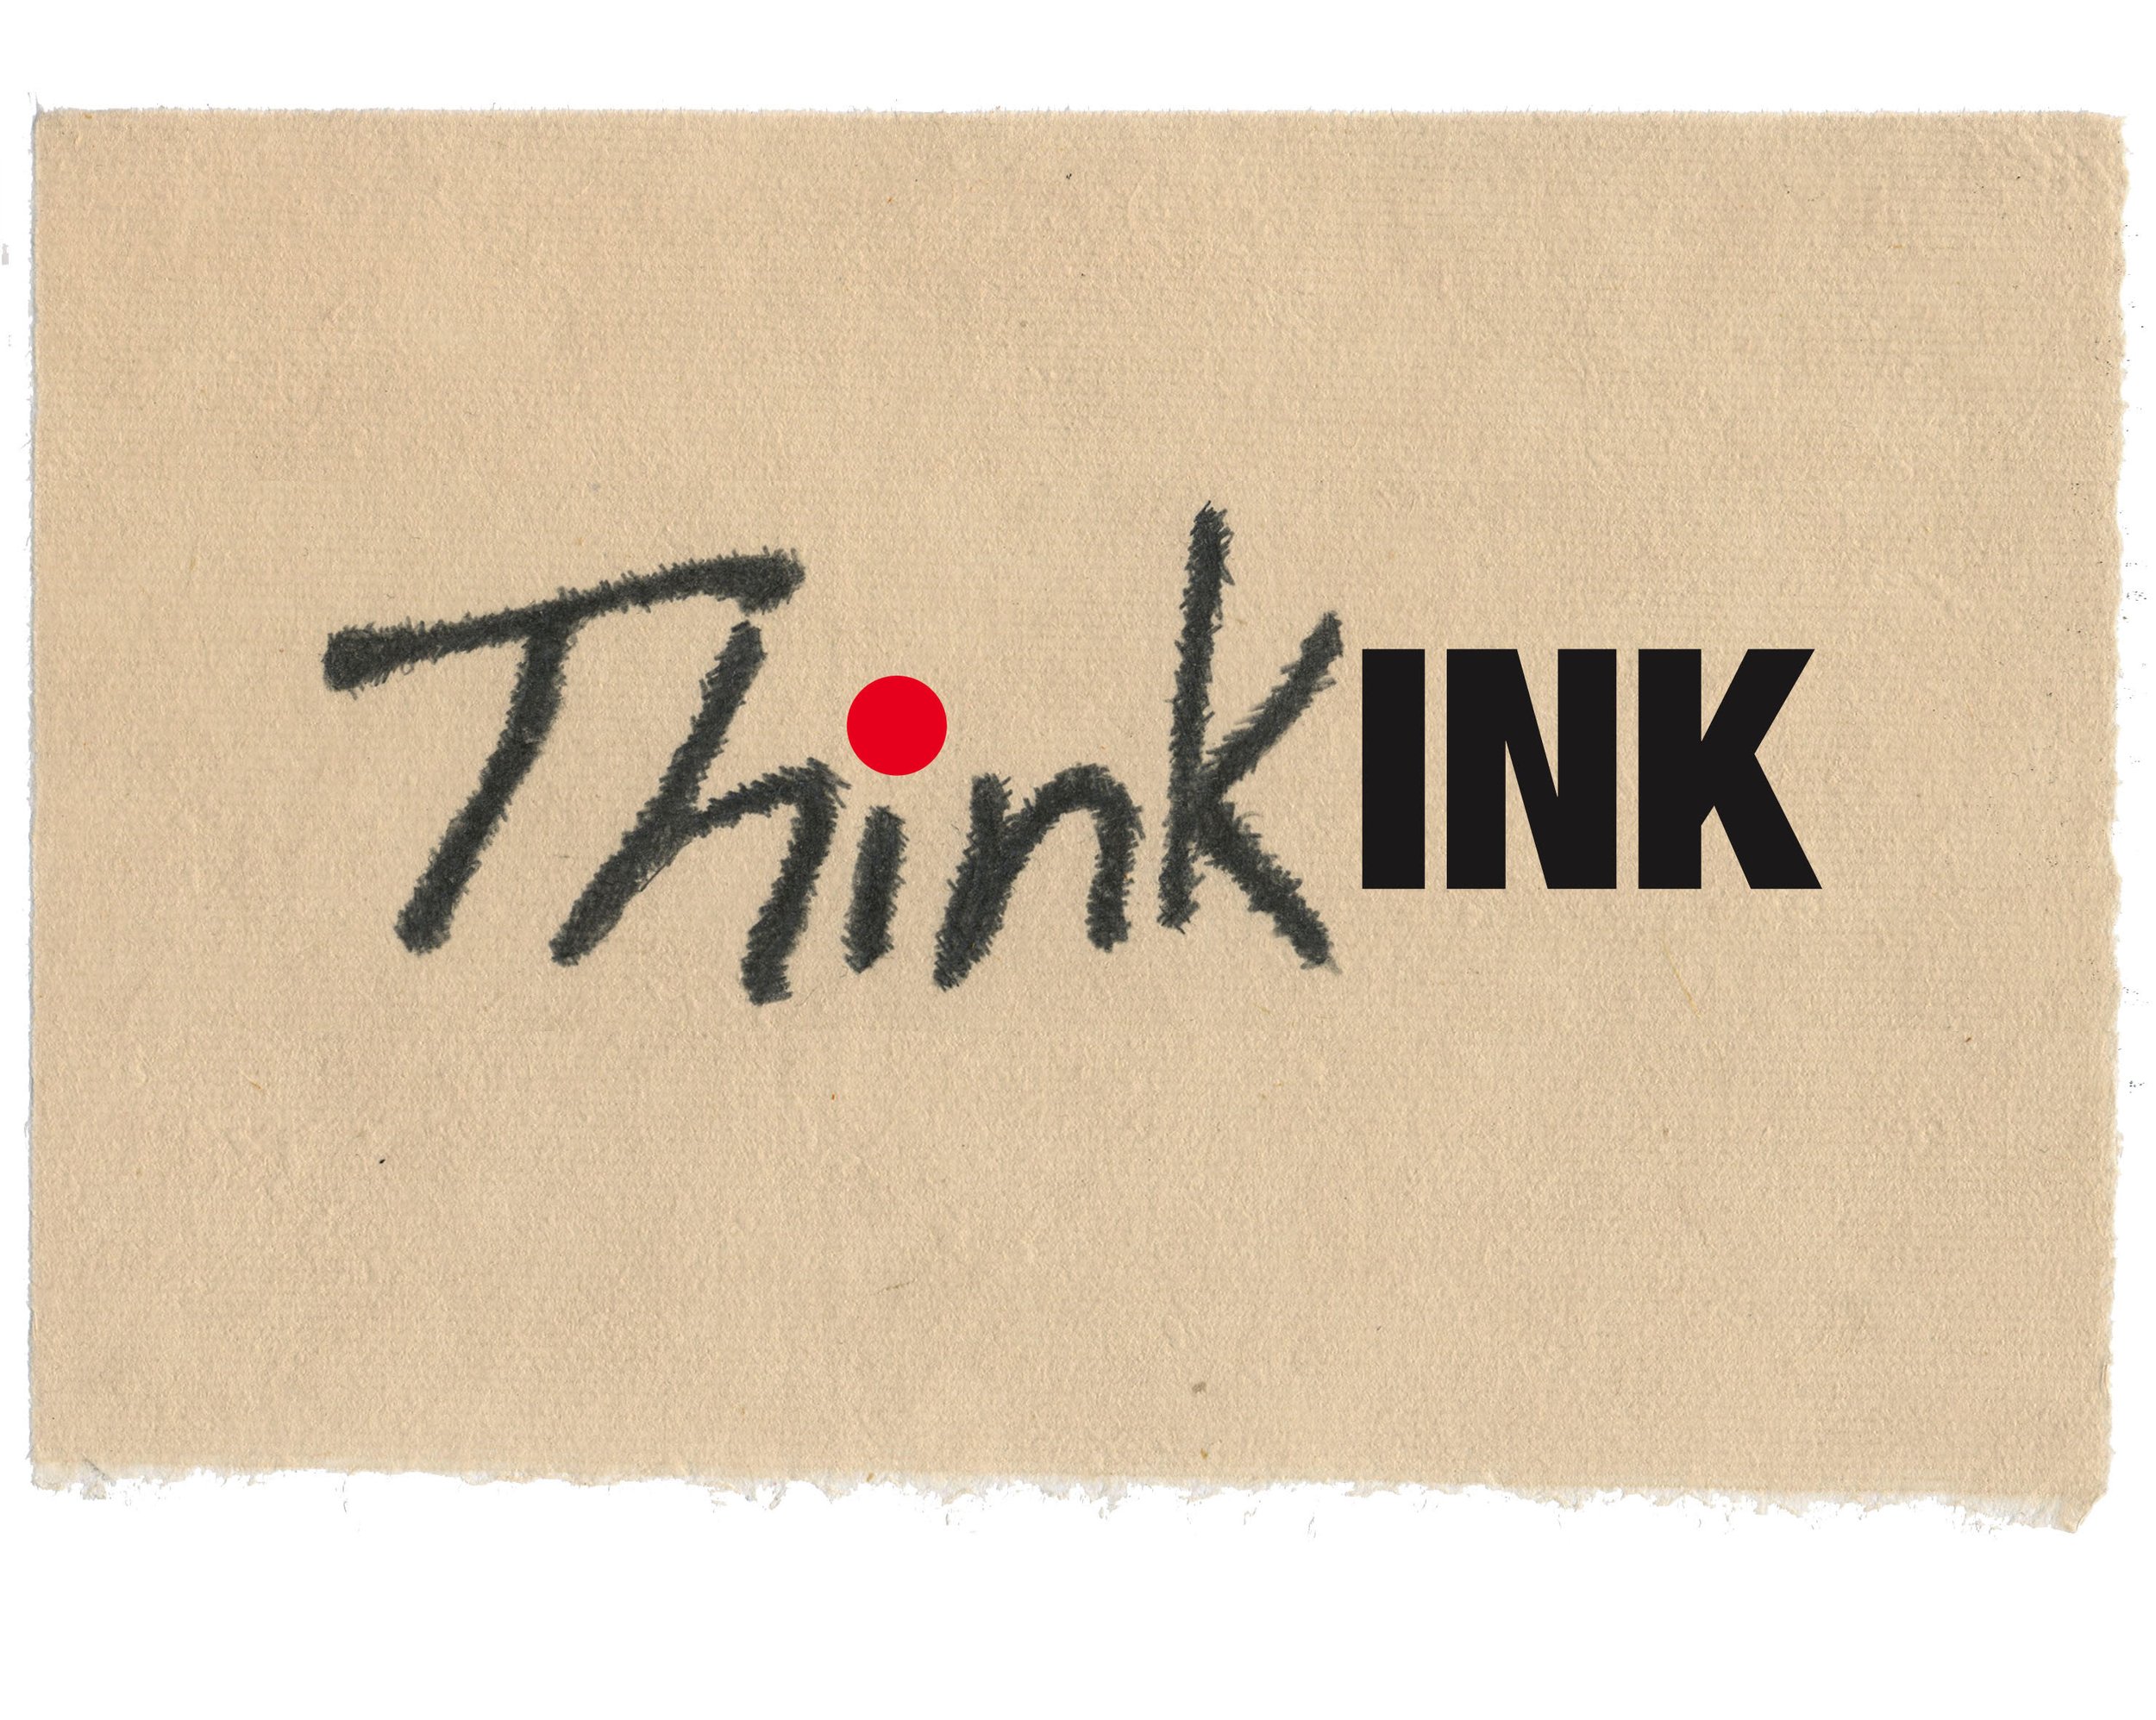 ThinkINK image